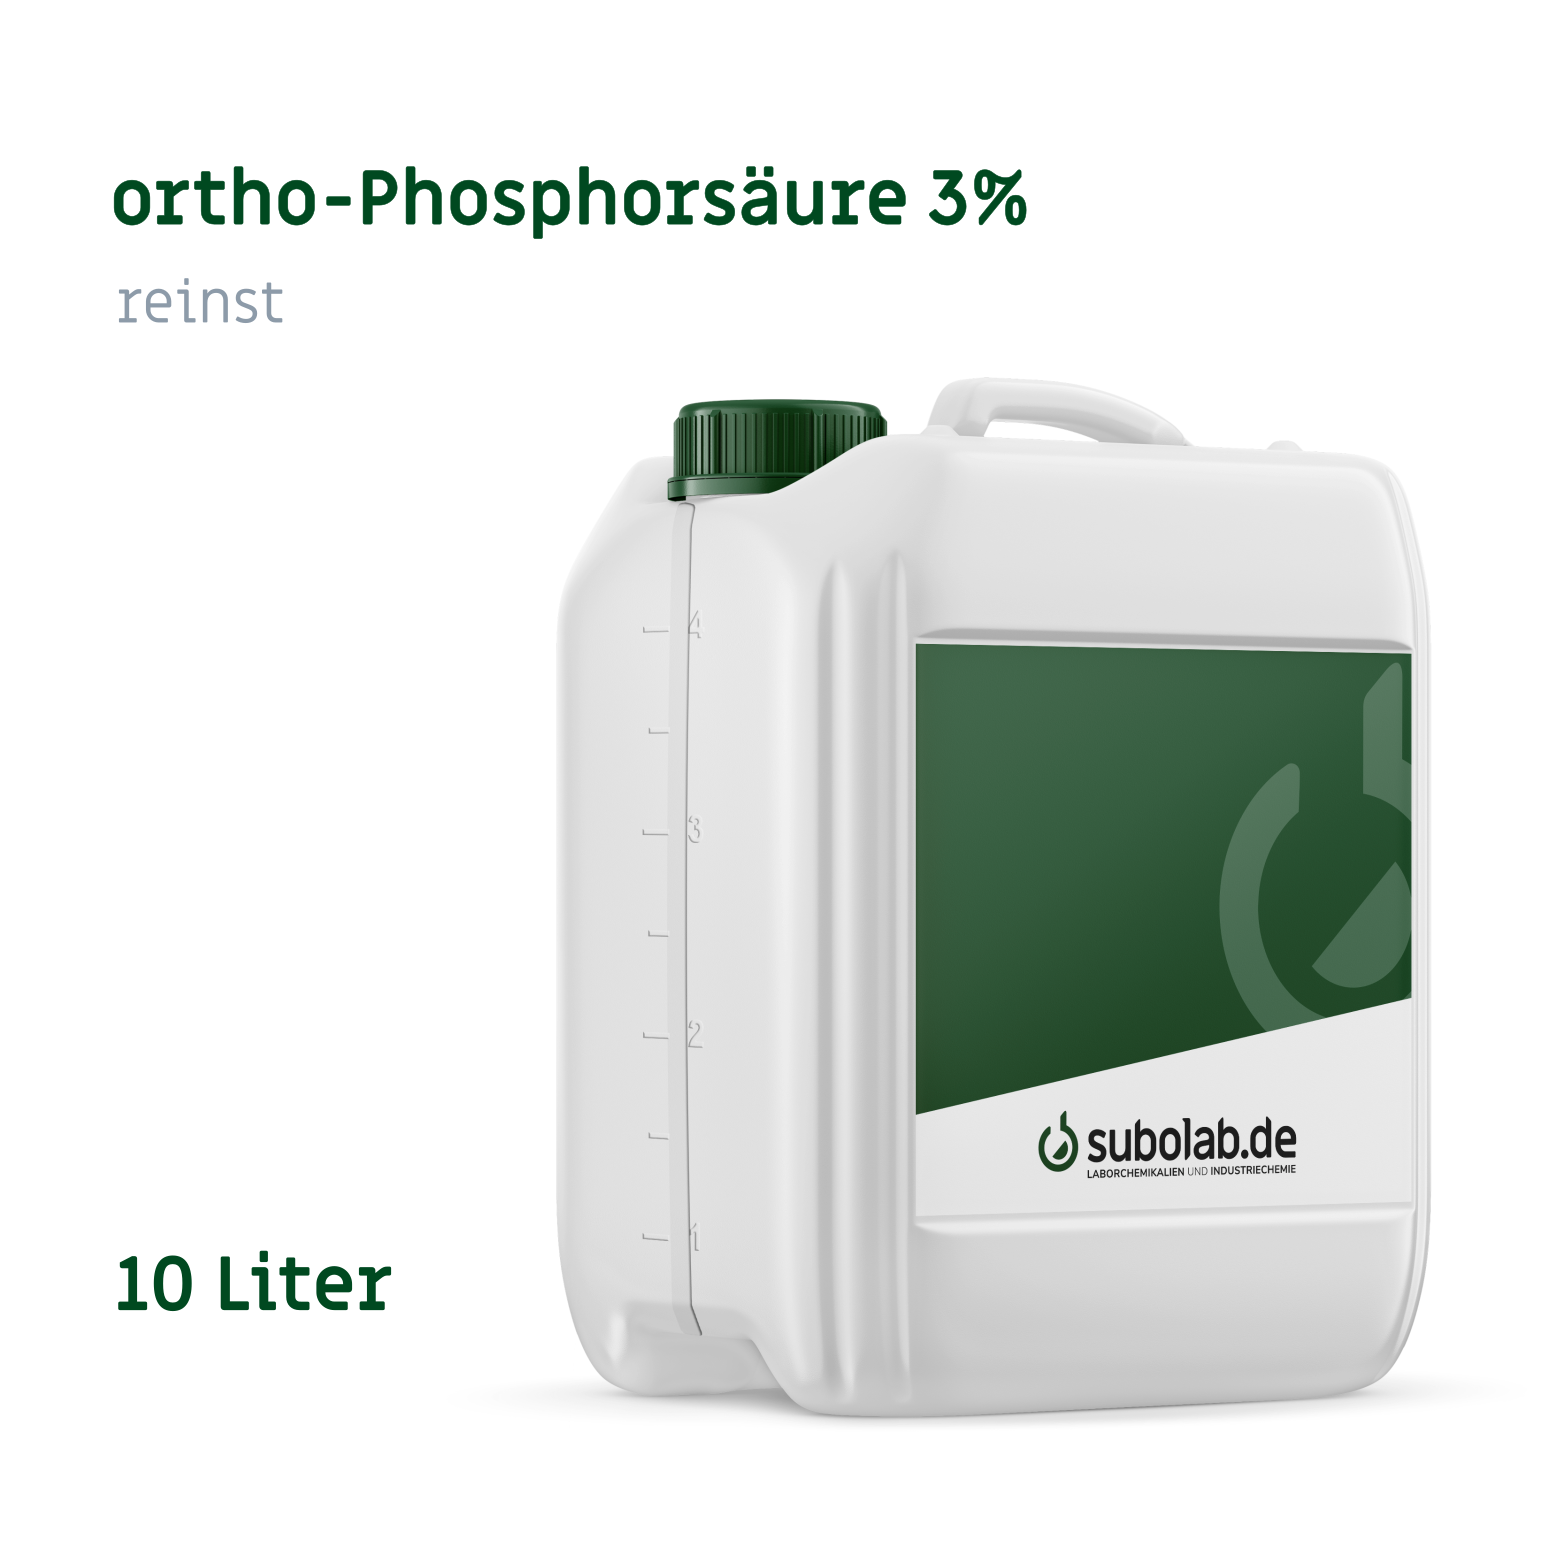 Bild von ortho-Phosphorsäure 3% reinst (10 Liter)